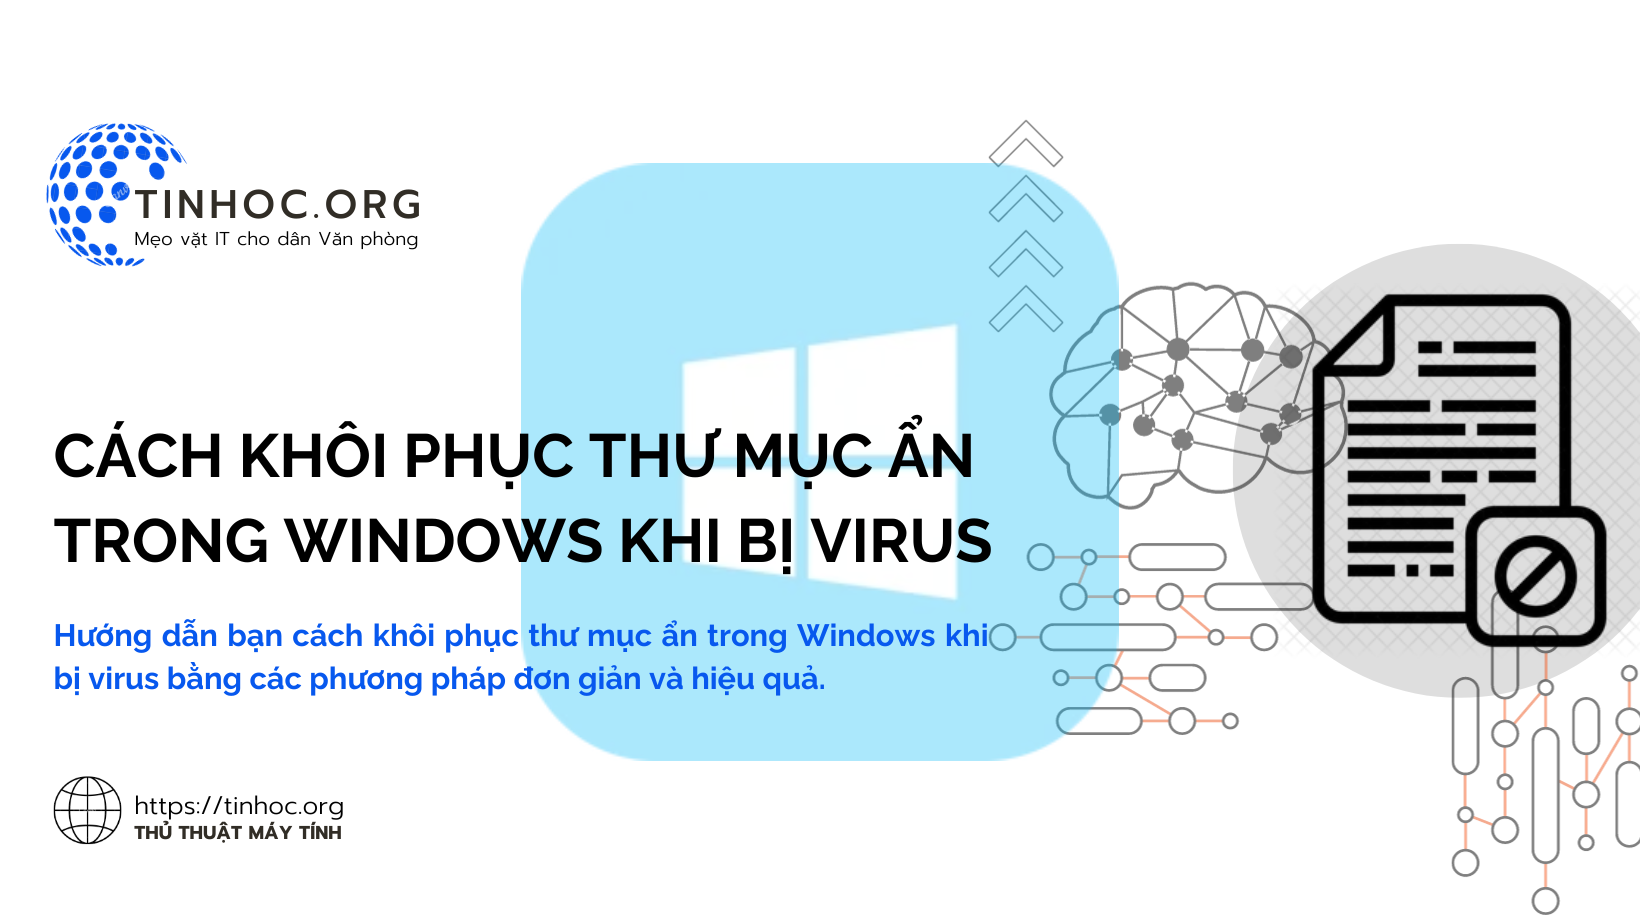 Cách khôi phục thư mục ẩn trong Windows khi bị virus